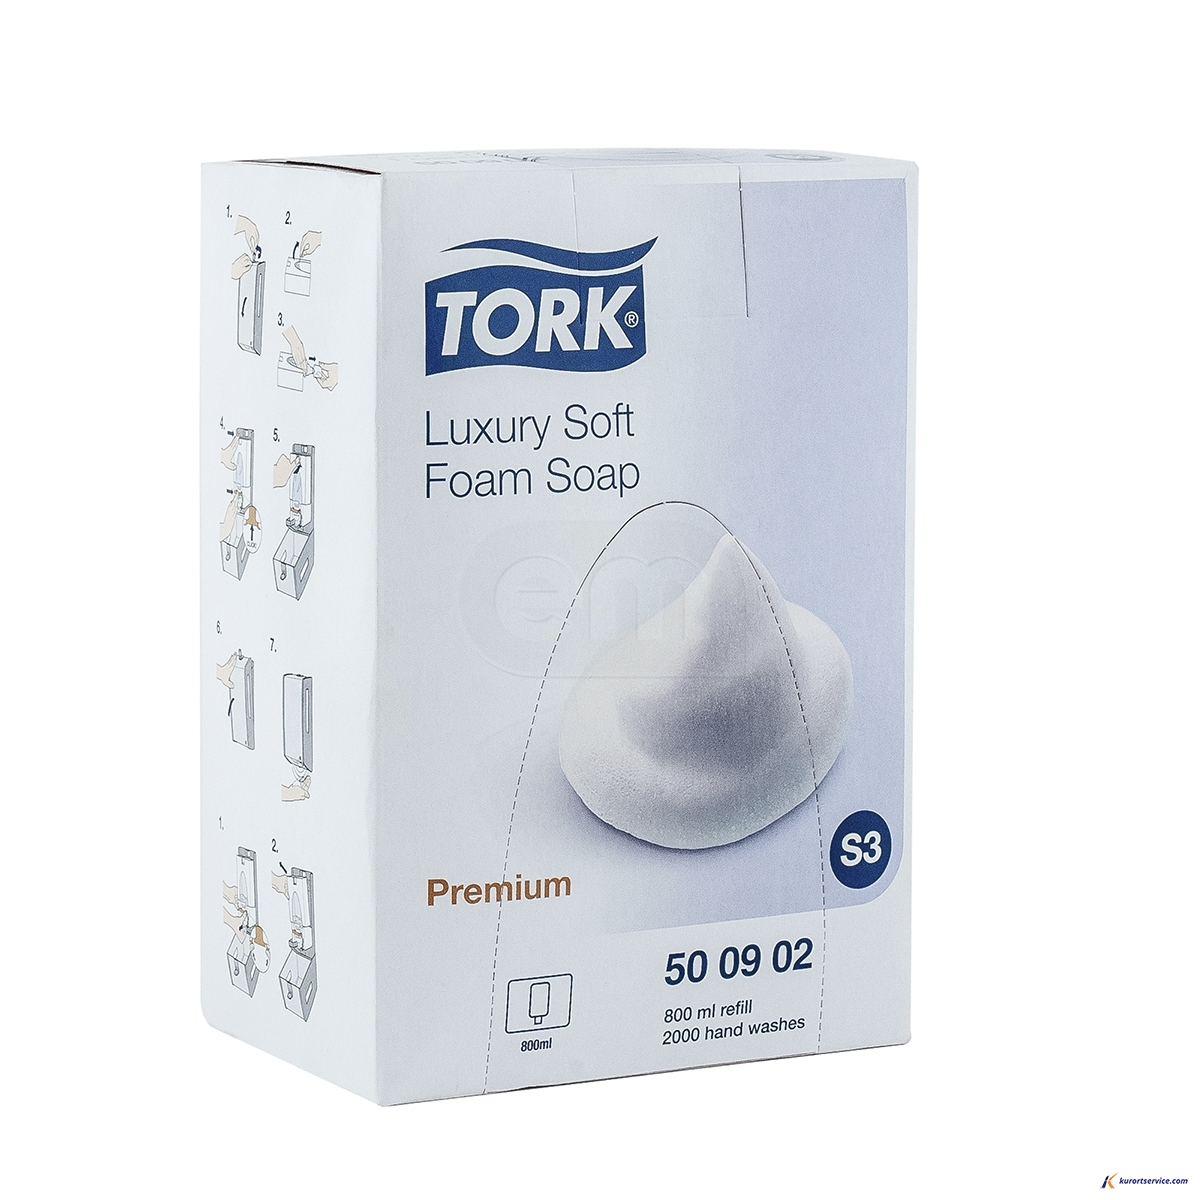 Tork Мыло-пена Luxuru Premium 800мл 500902 S3 купить в интернет-магазине Курорт Сервис